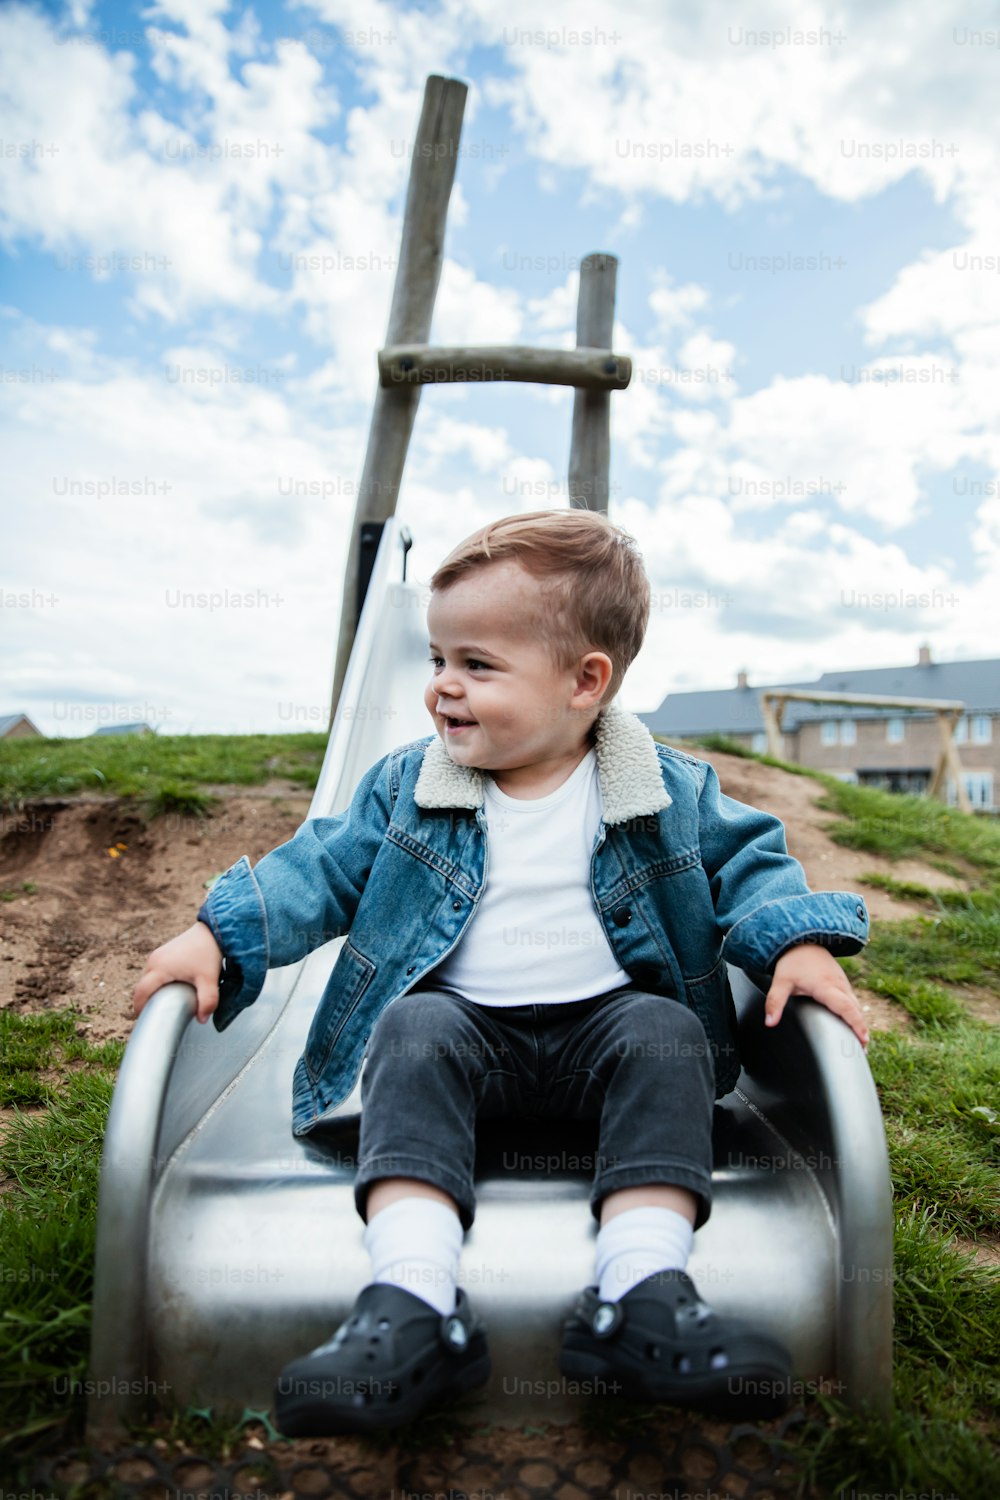 Ein kleiner Junge, der auf einer Rutsche sitzt